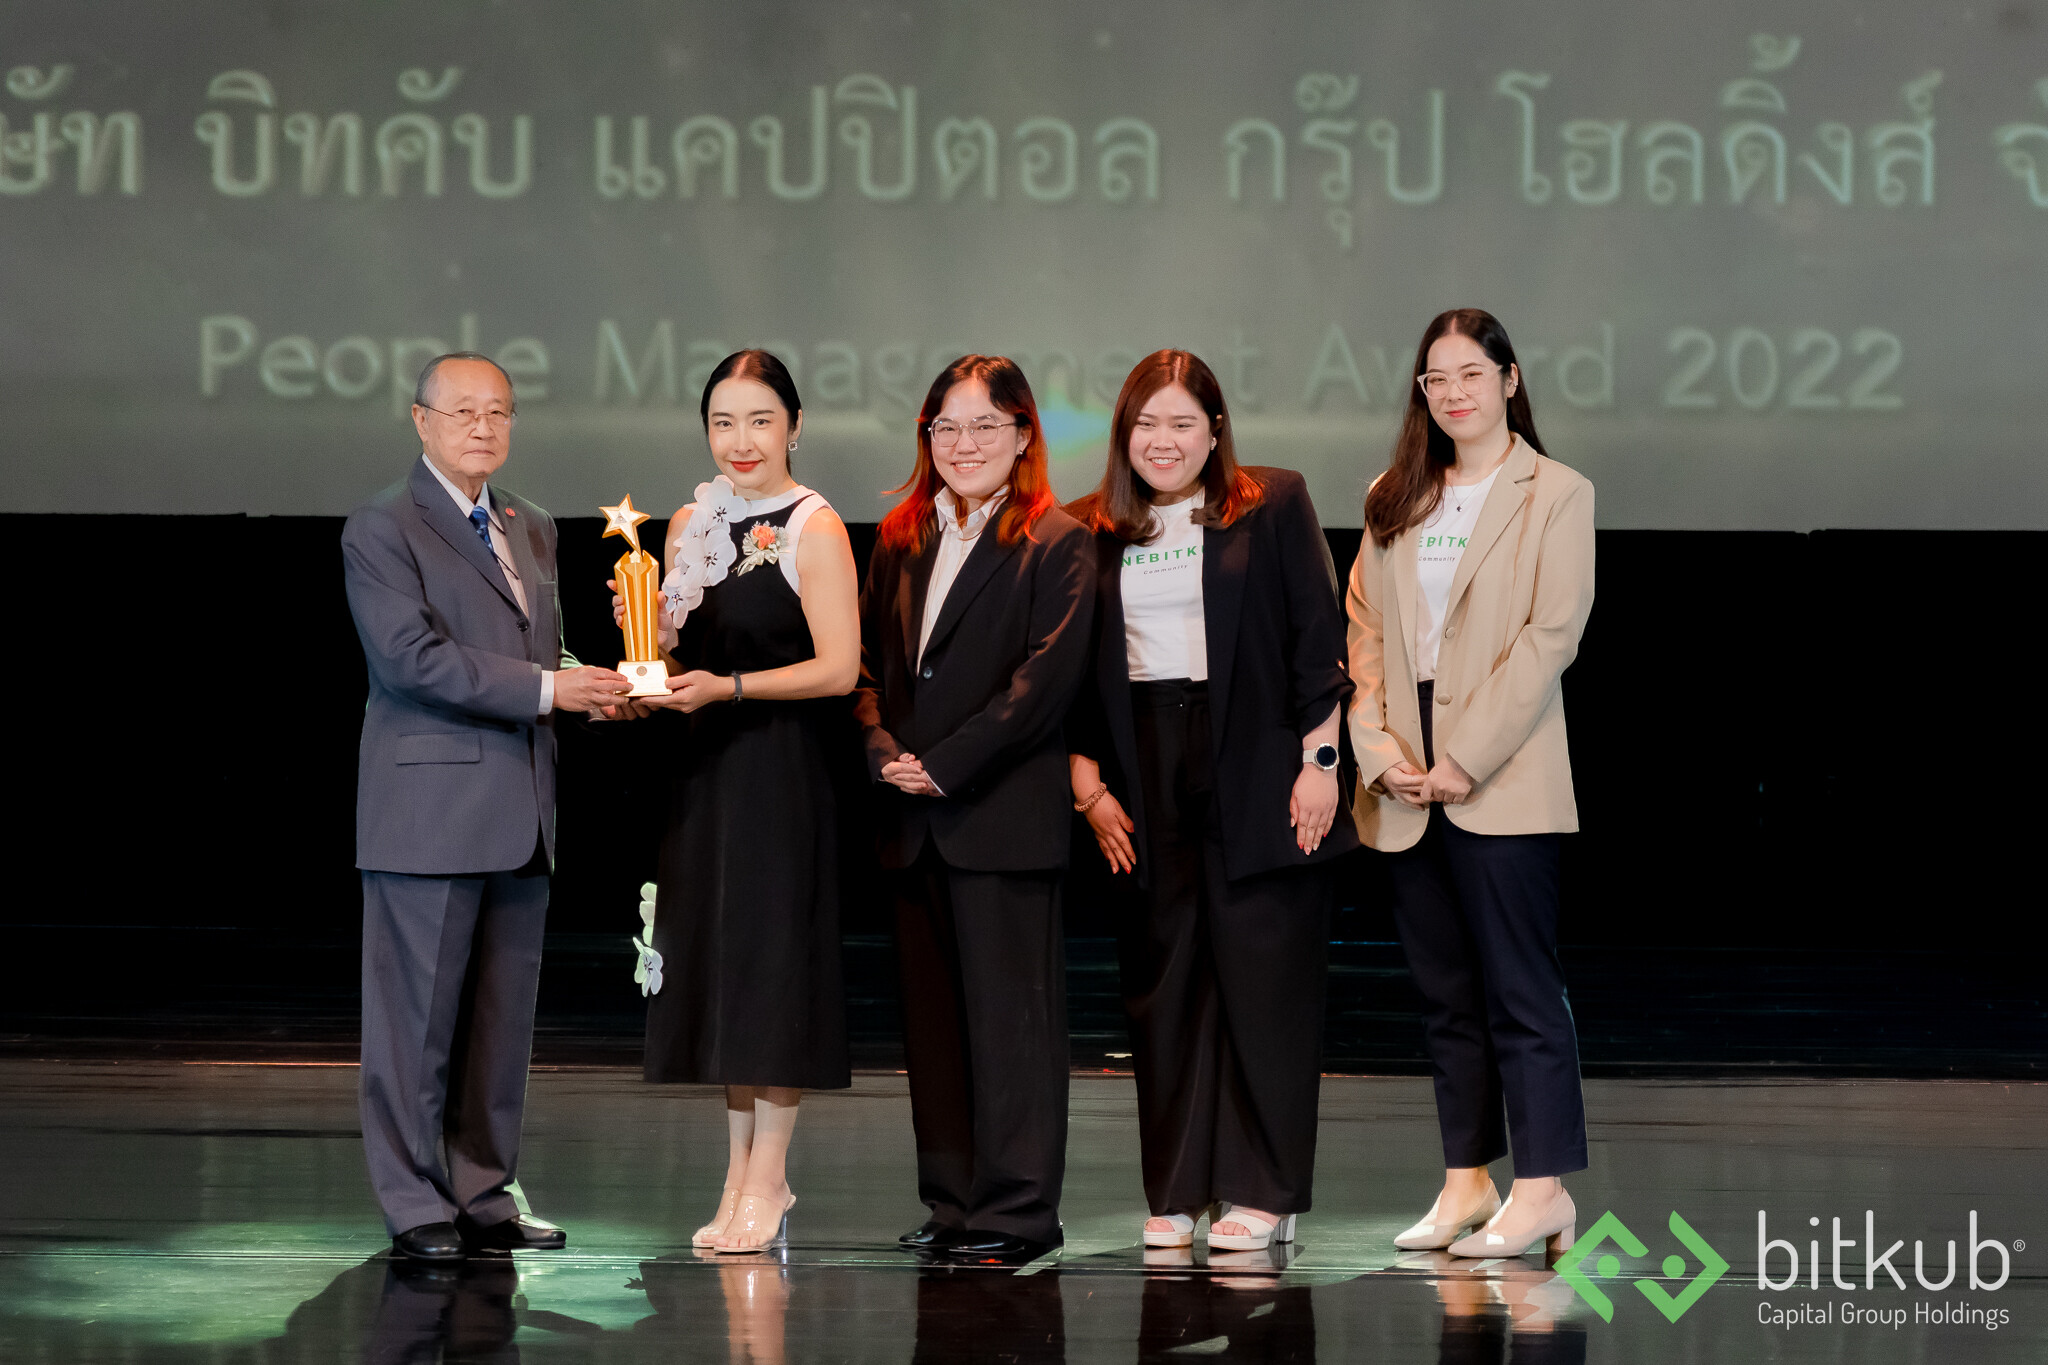 บิทคับ แคปปิตอล กรุ๊ป คว้ารางวัล People Management Award 2022 สาขา The Best Recruitment and Employer Brand จากสมาคมการจัดการงานบุคคลแห่งประเทศไทย